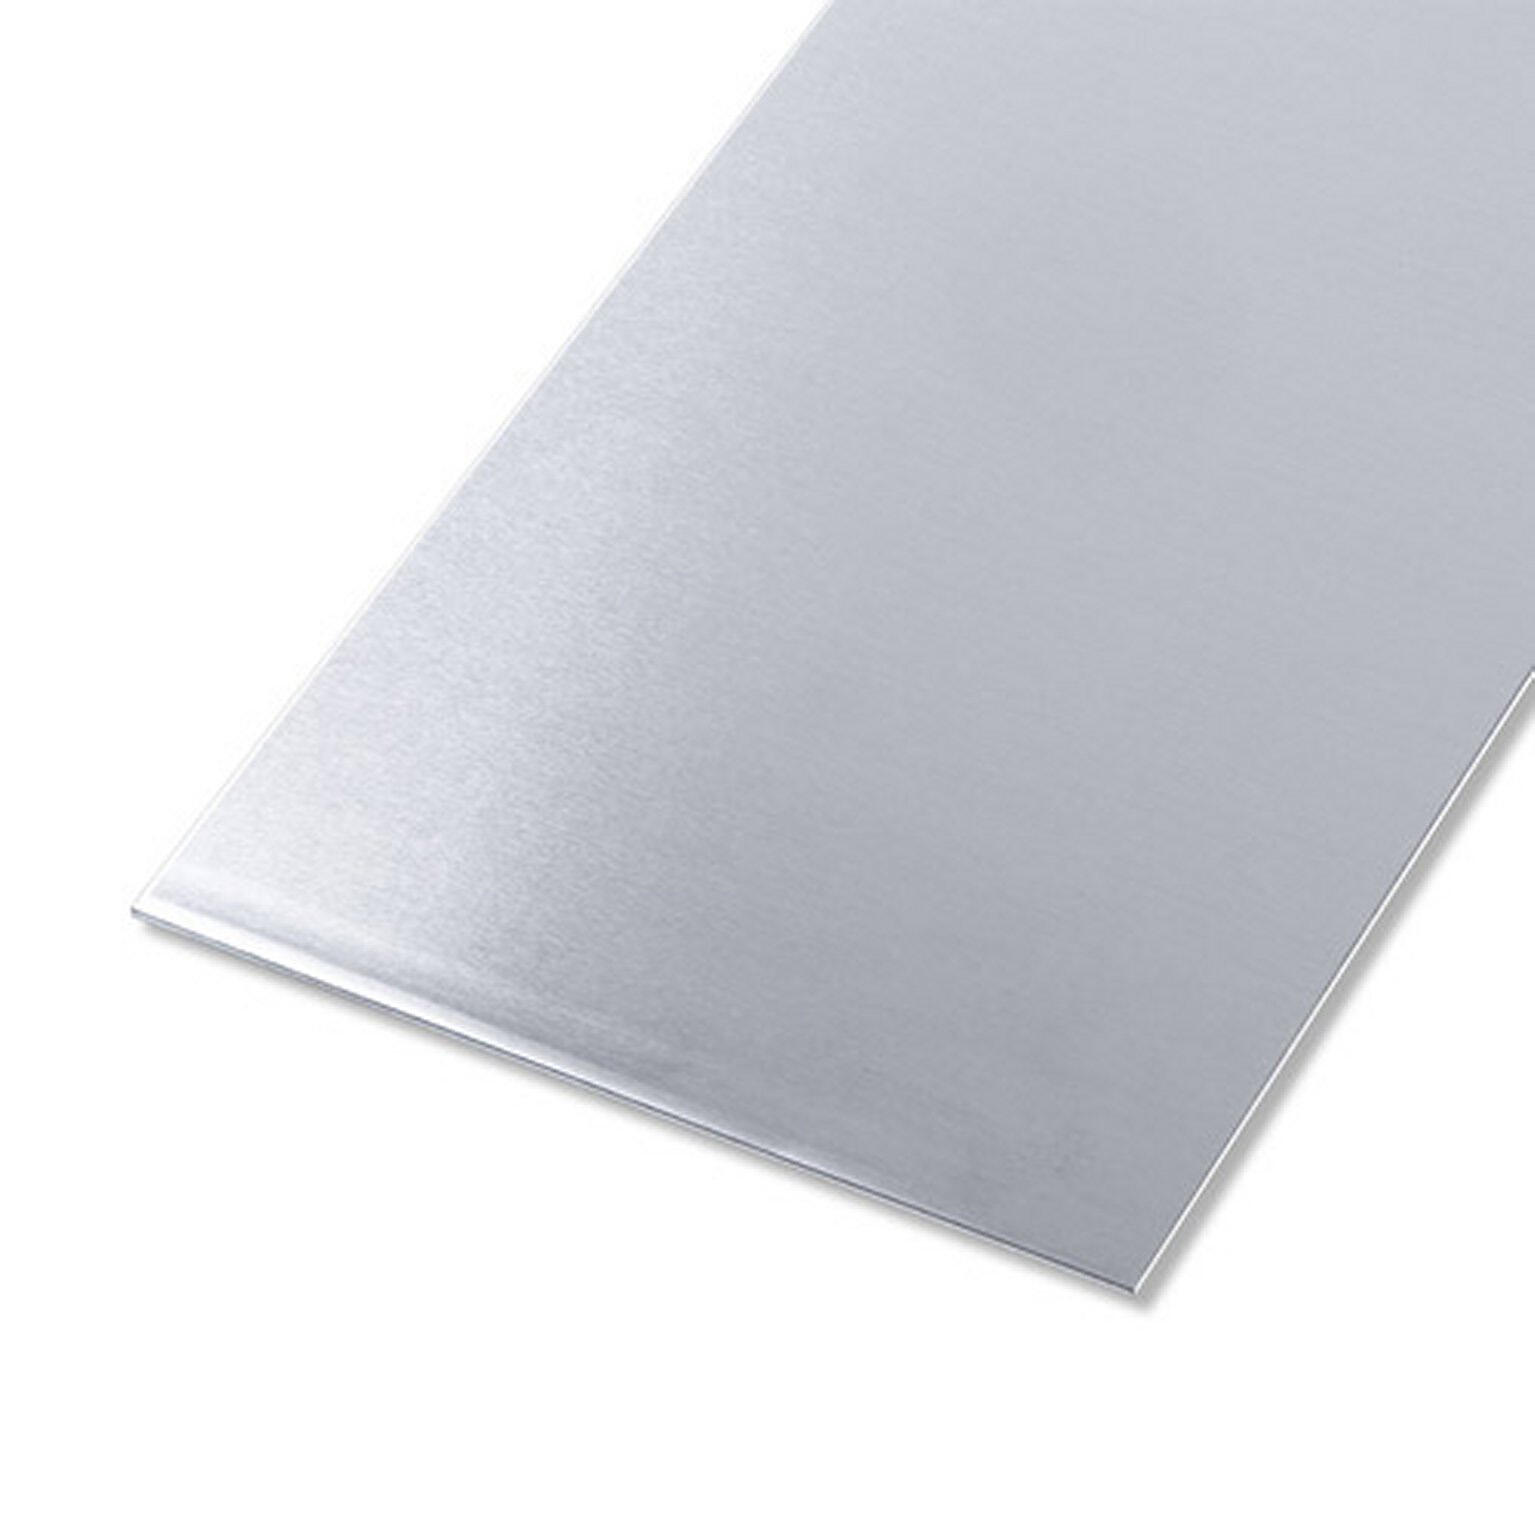 Tôle en aluminium - 1 mm, 20 x 10 cm acheter en ligne